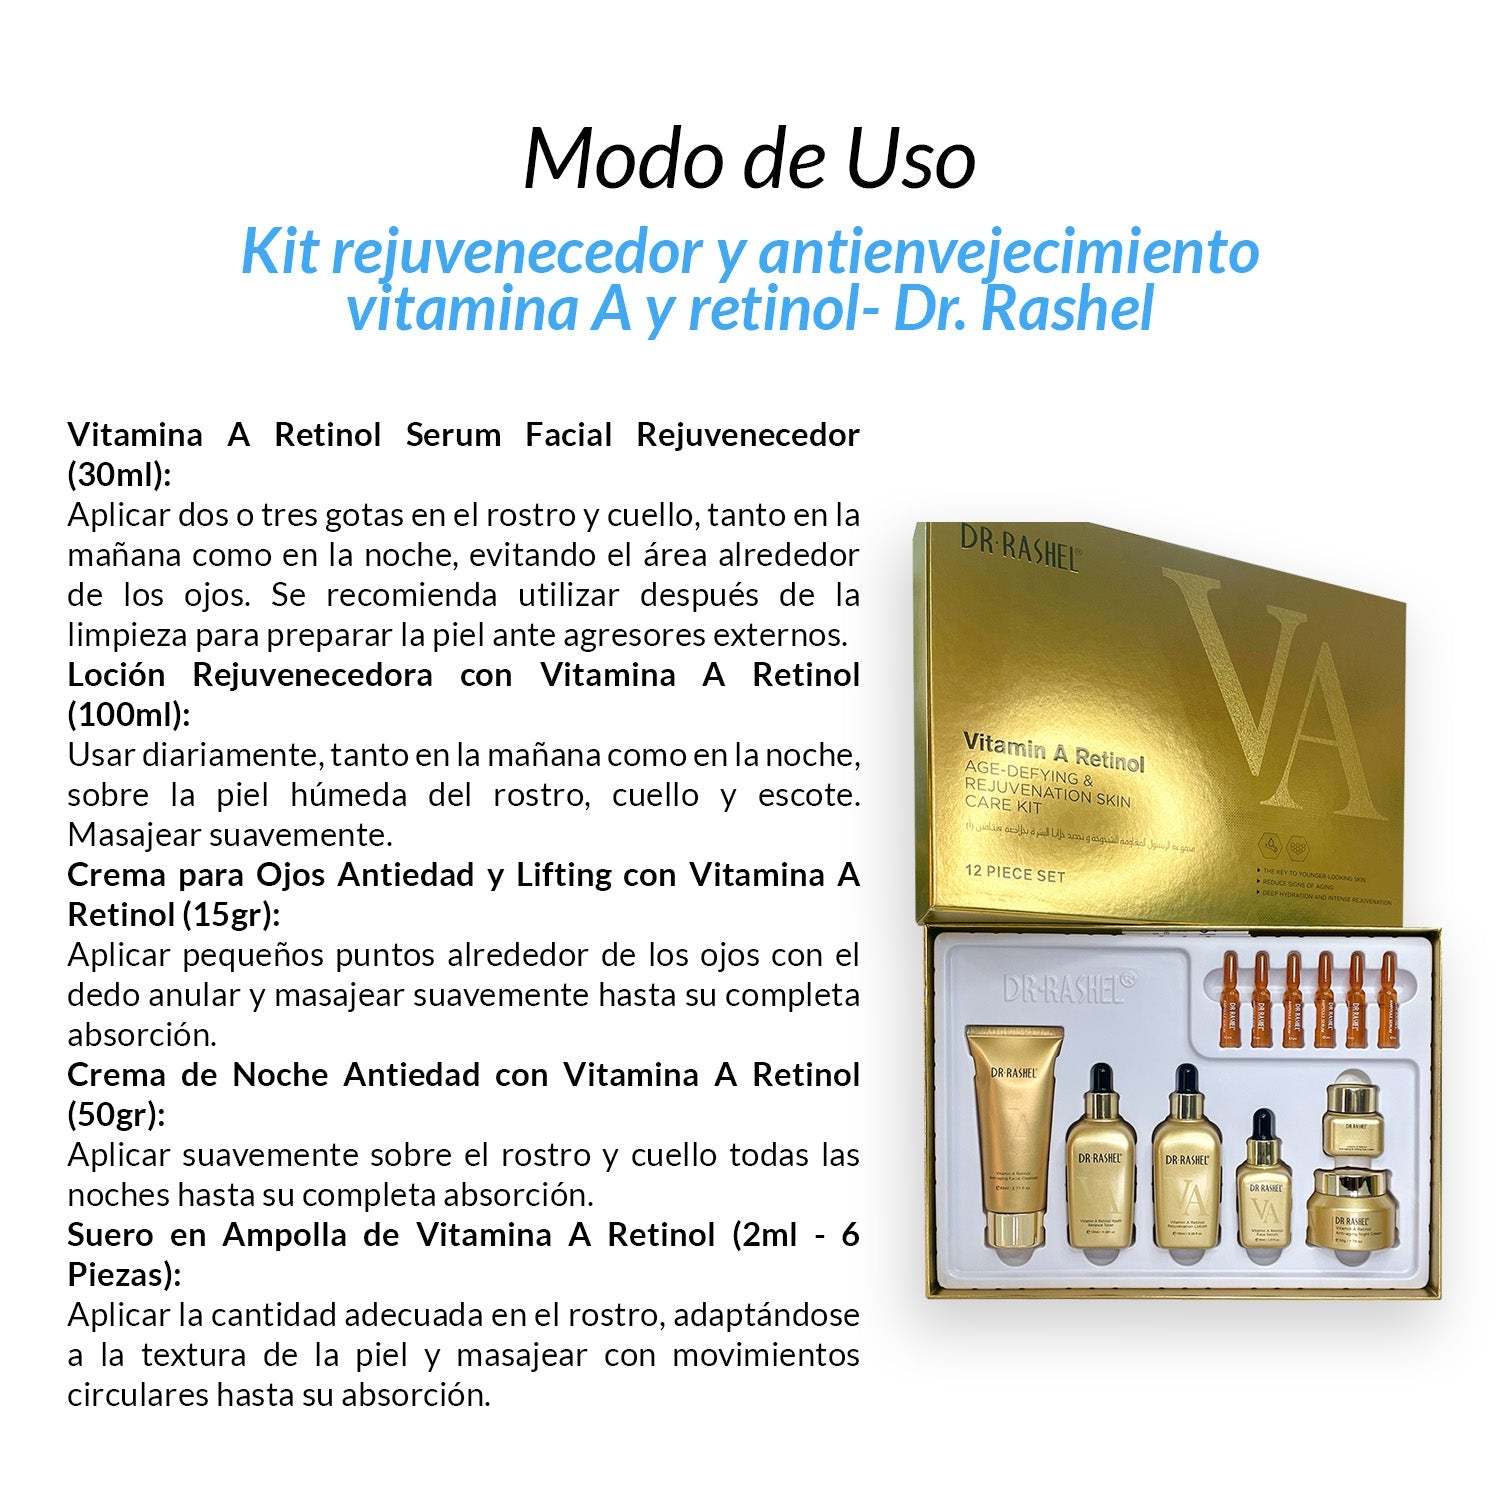 Kit rejuvenecedor y antienvejecimiento vitamina A y retinol